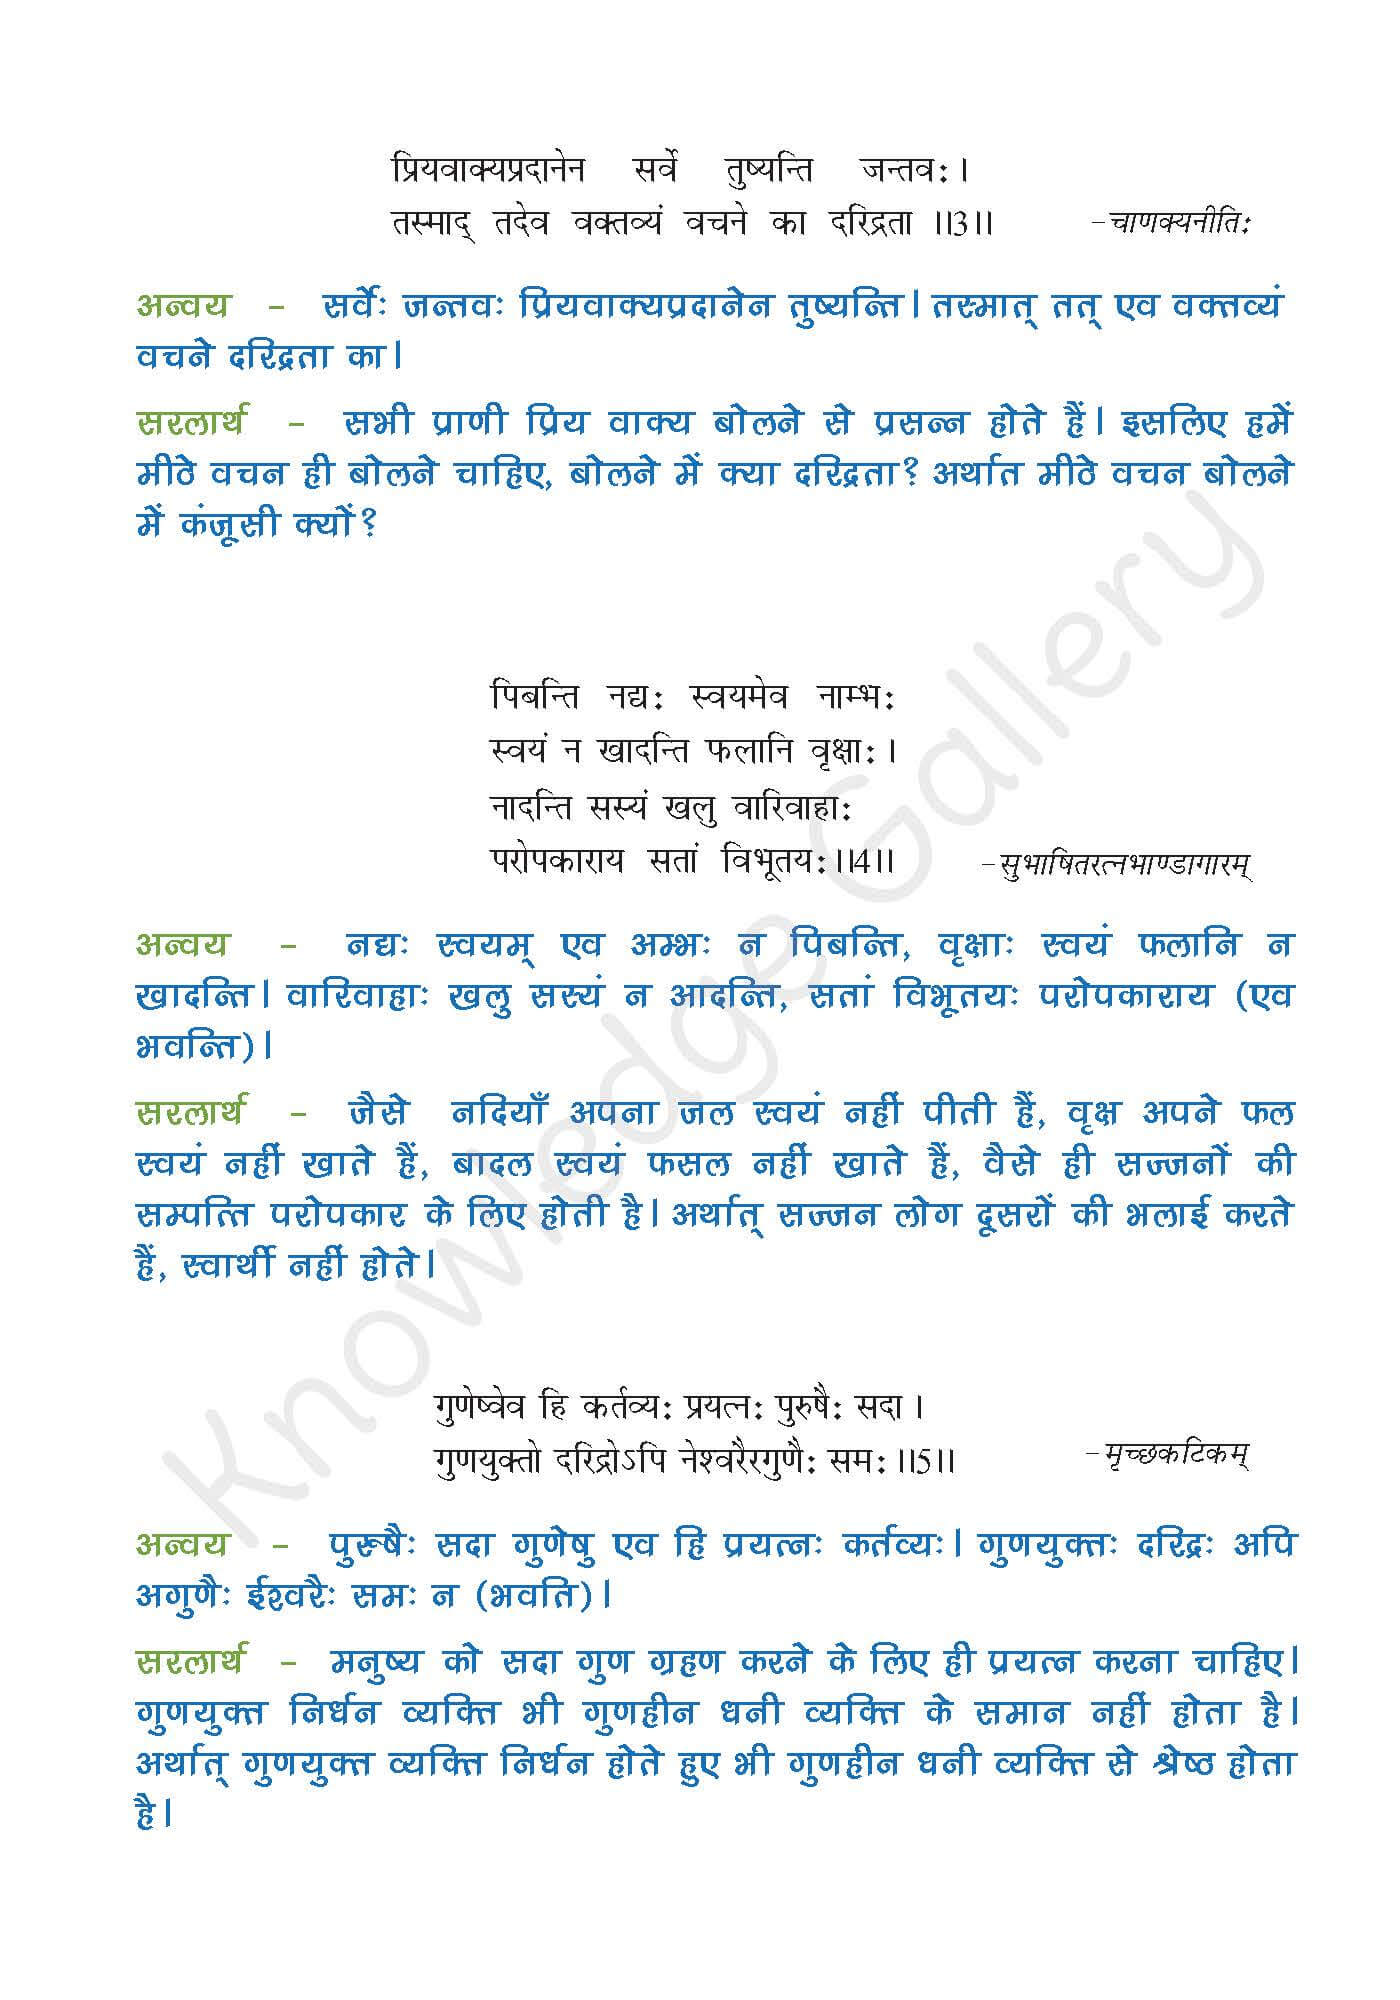 NCERT Solution For Class 9 Sanskrit Chapter 4 part 2